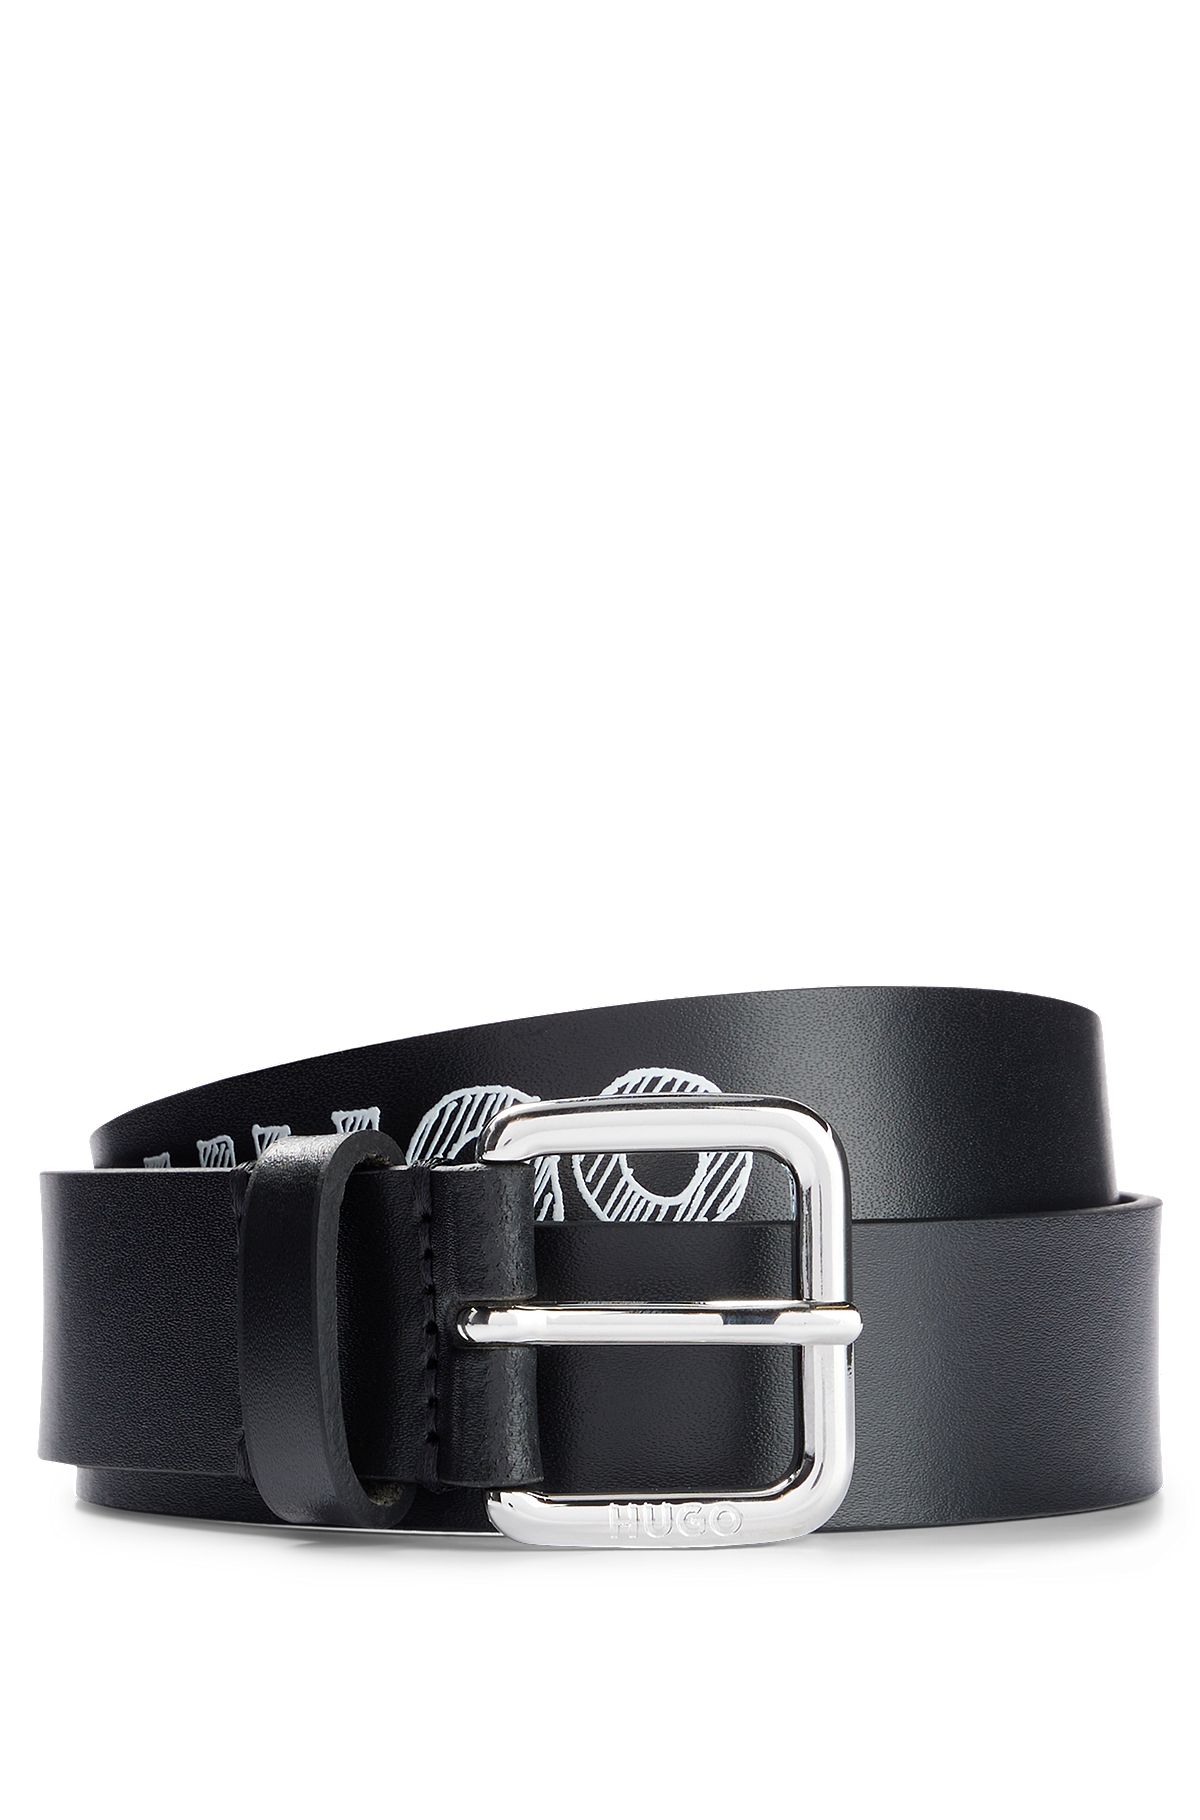 Cinturón de piel con detalle de logo en la correa, elaborado en Italia, Negro